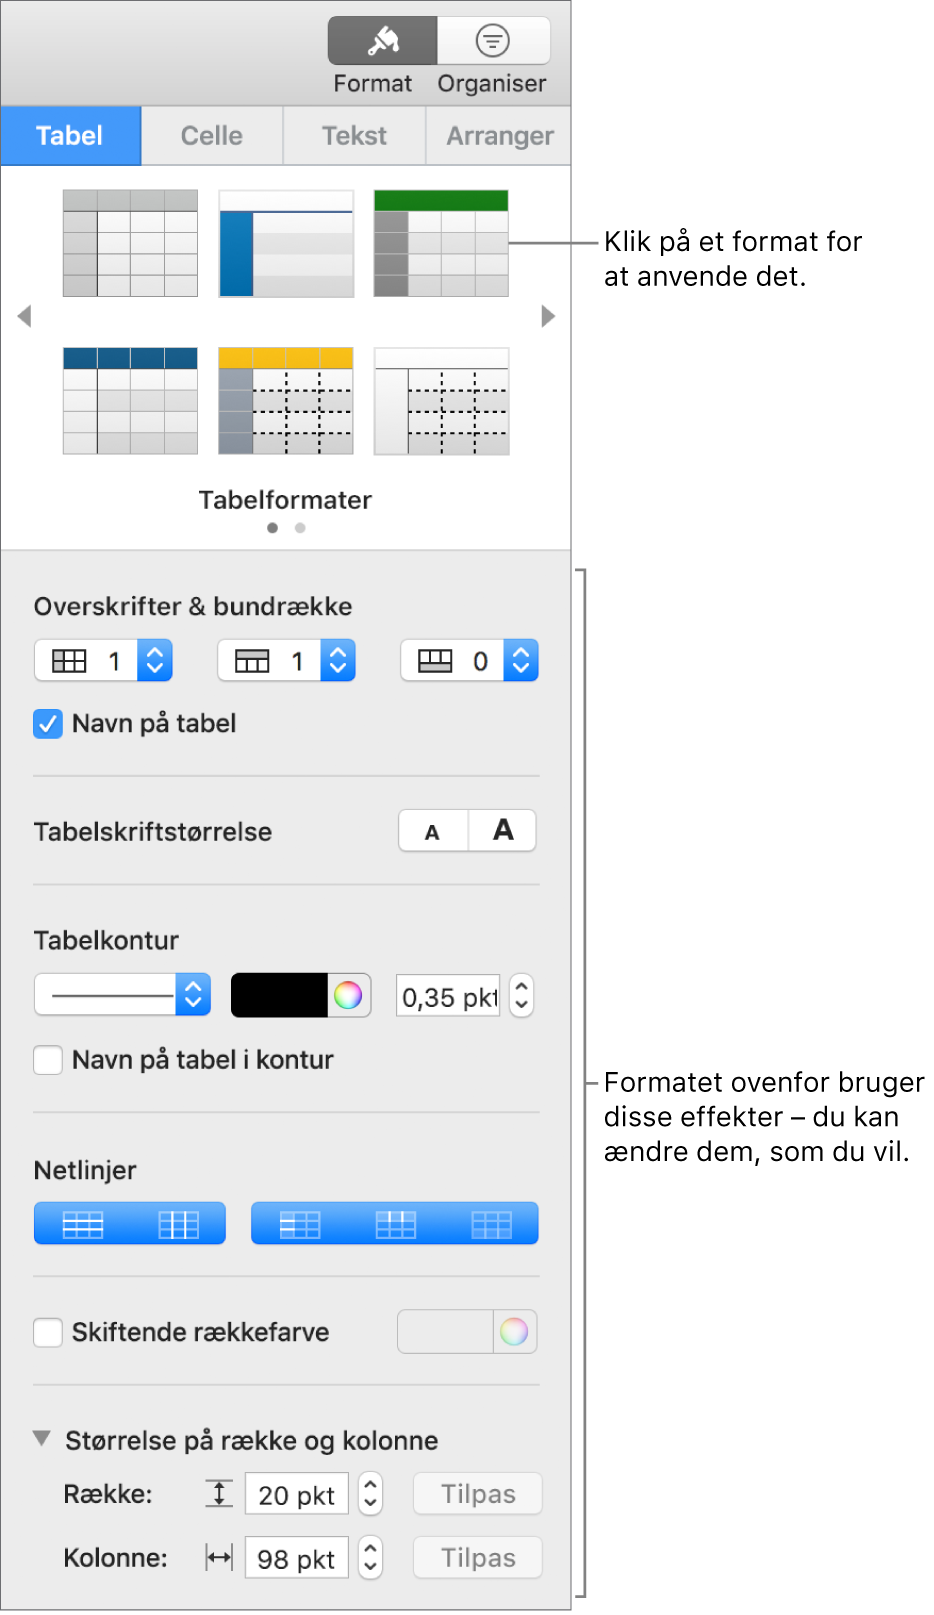 Indholdsoversigten Format, der viser tabelformater og formateringsmuligheder.